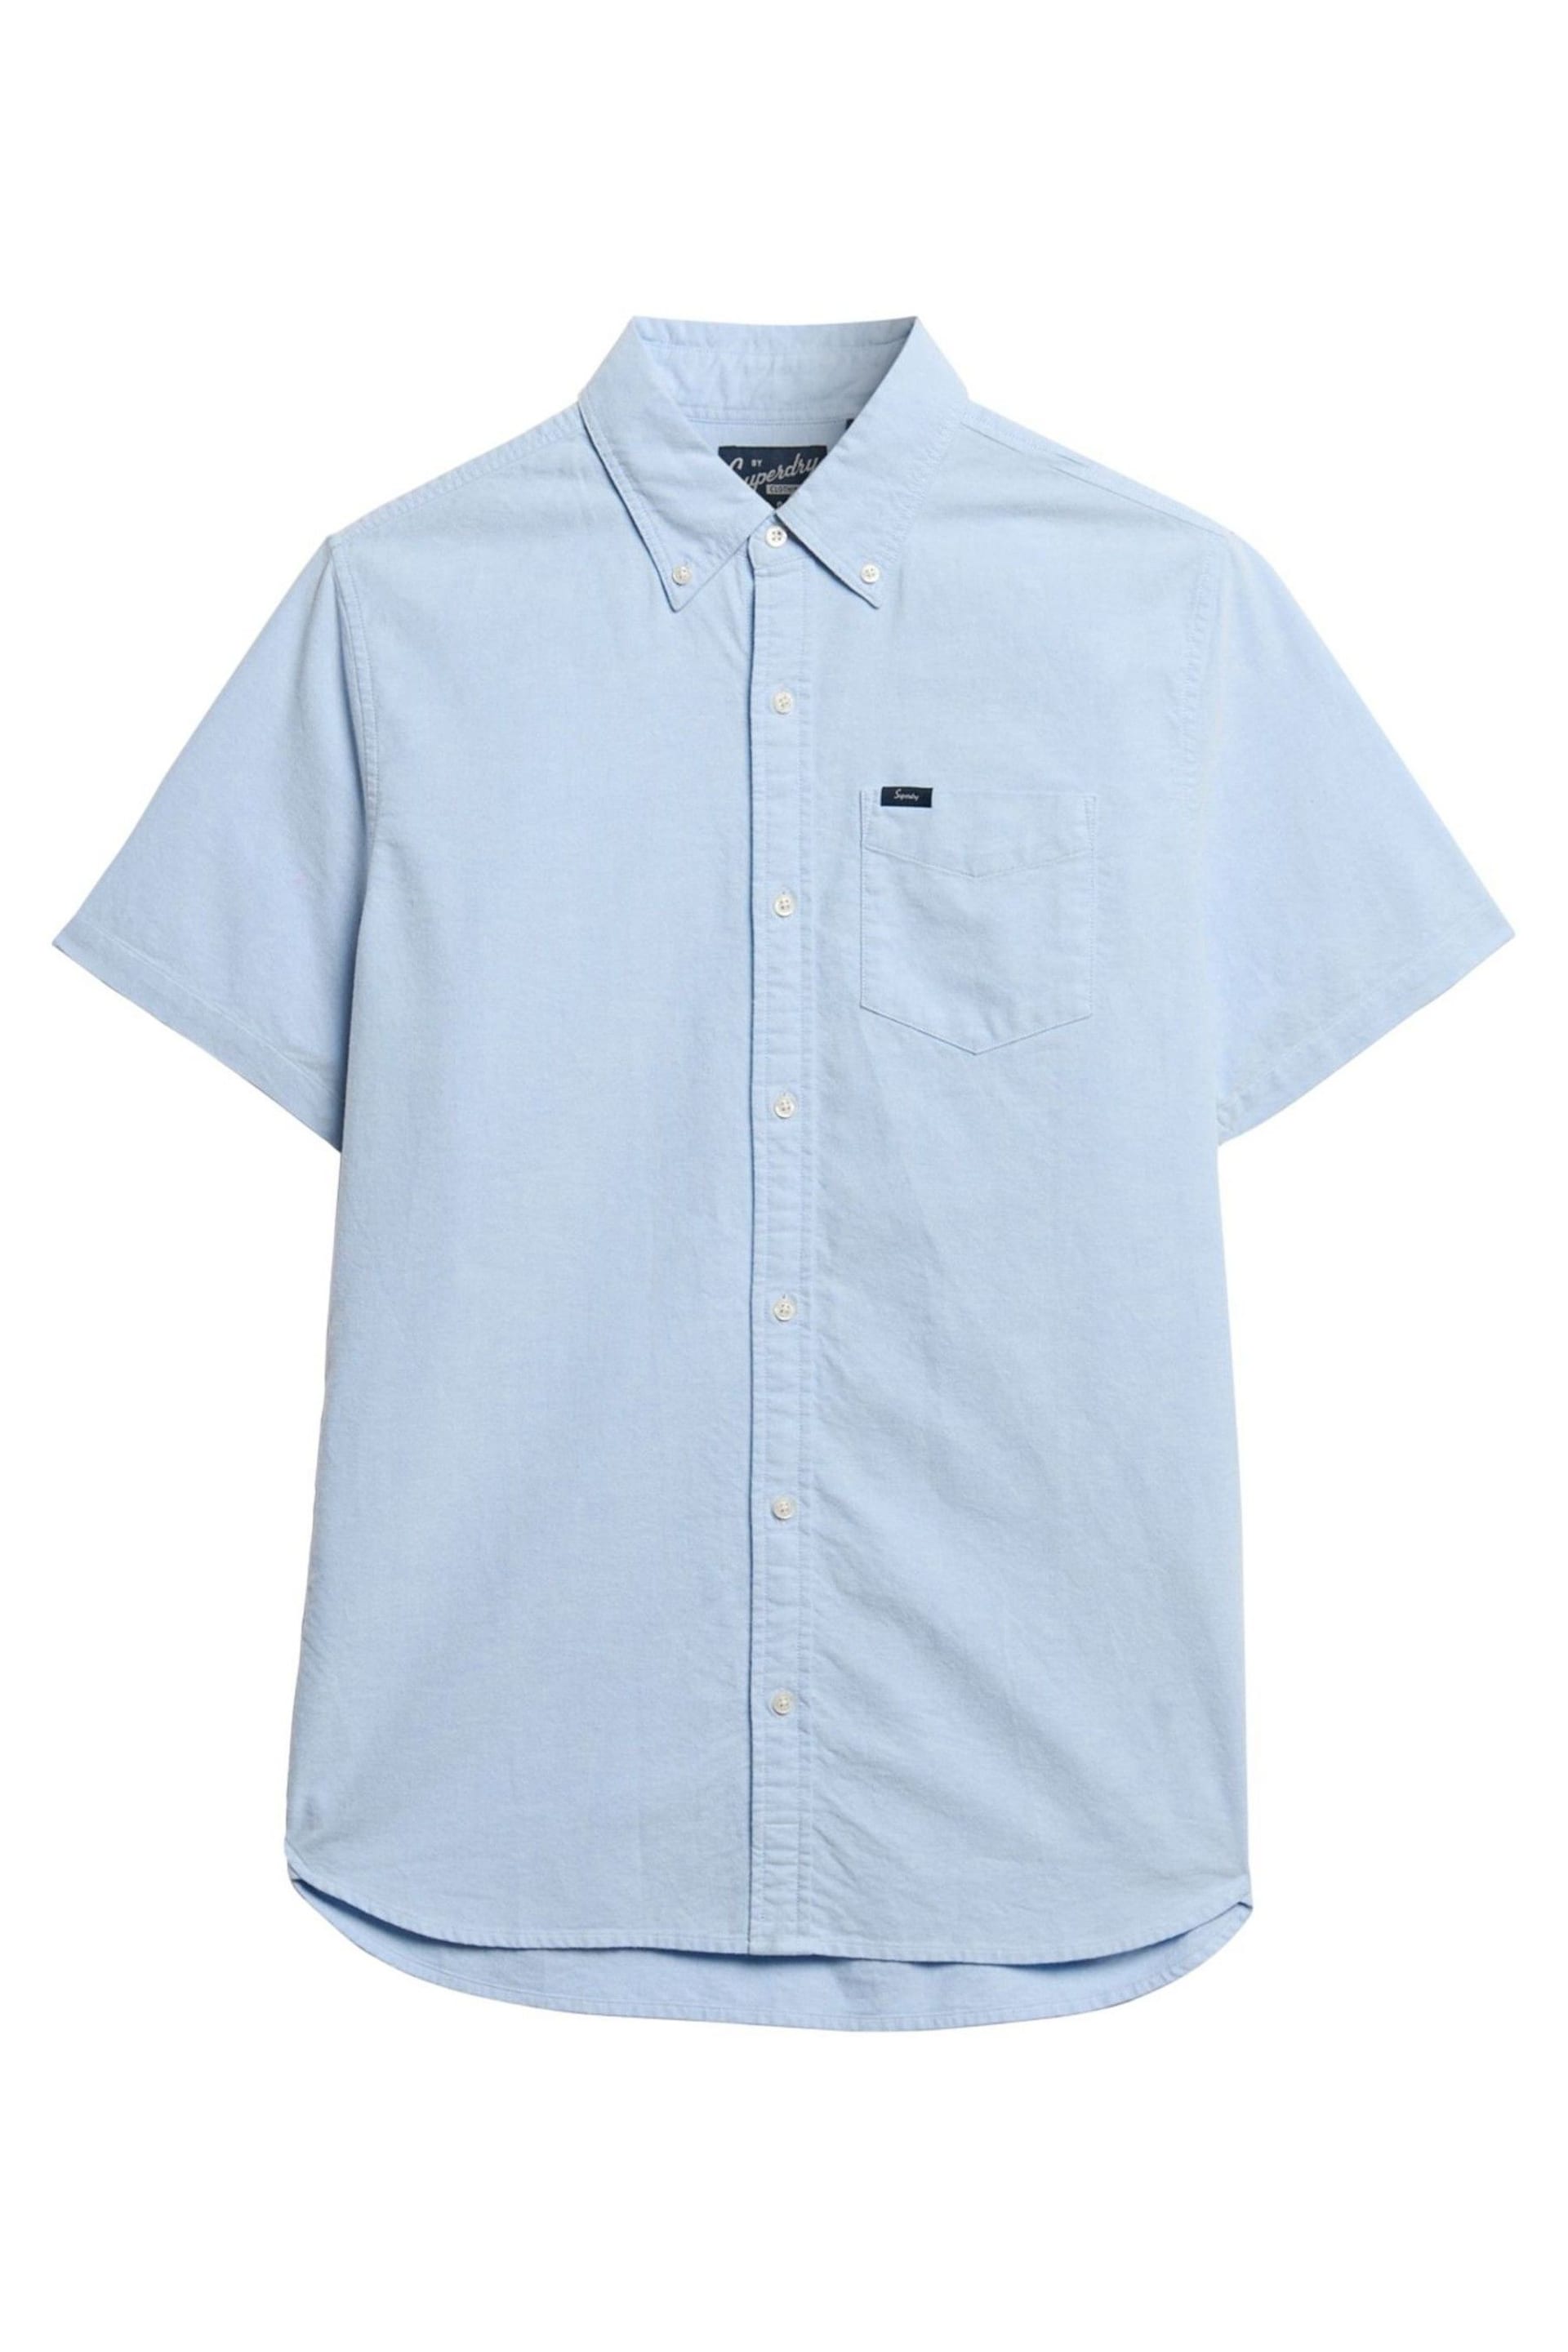 Superdry Blue Vintage Oxford Short Sleeve Shirt - Image 7 of 9